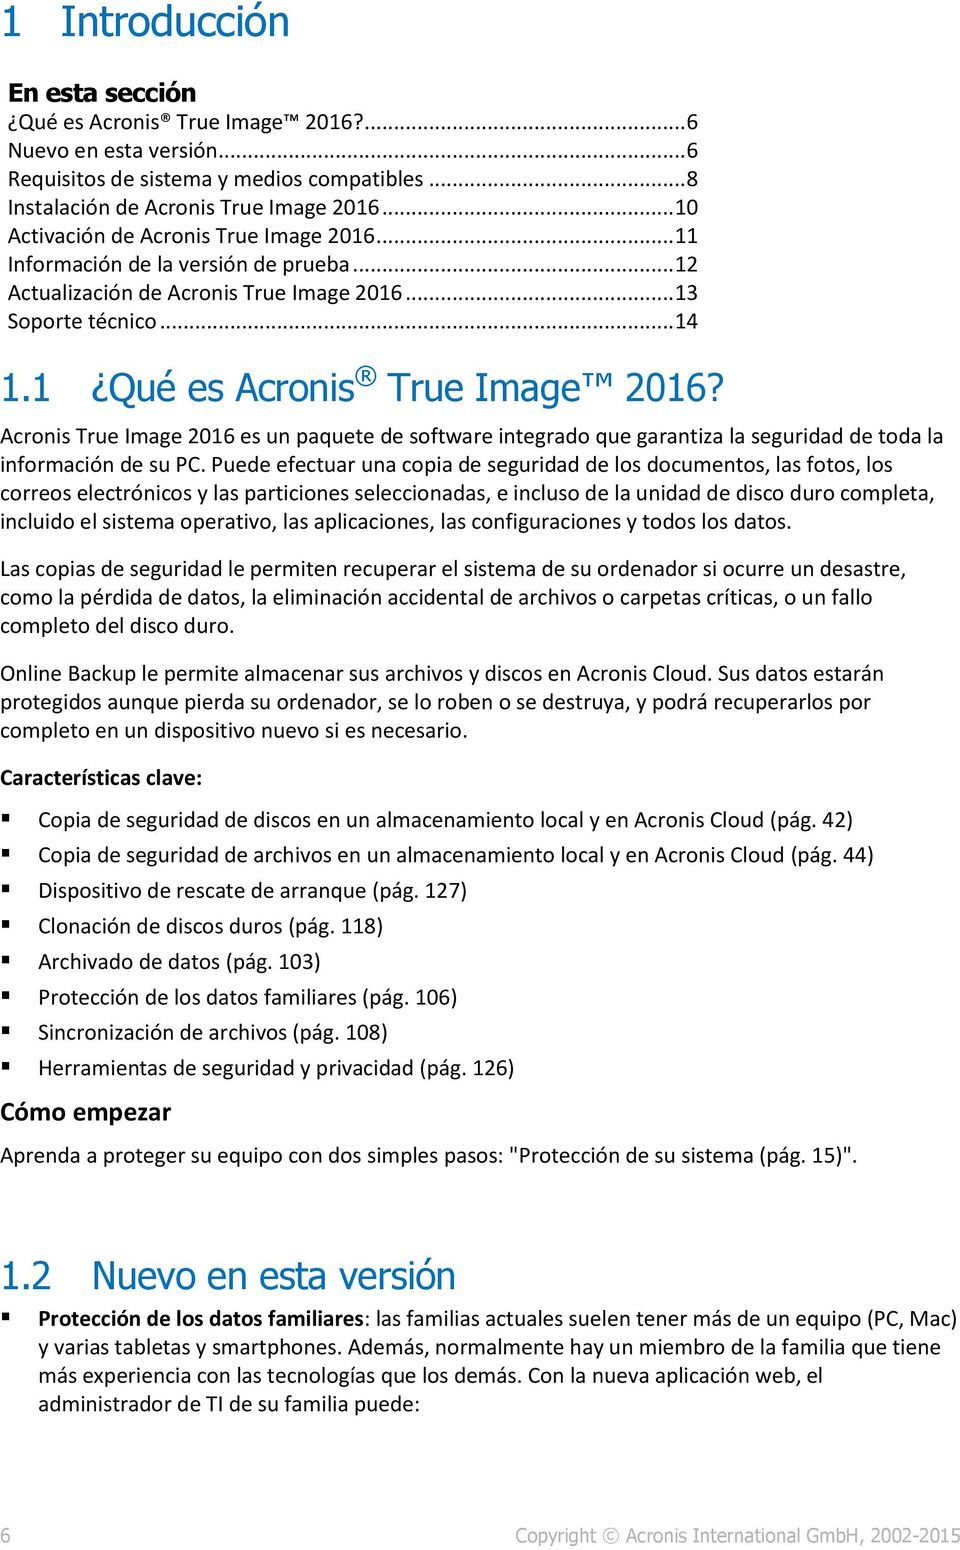 Acronis True Image 2016 es un paquete de software integrado que garantiza la seguridad de toda la información de su PC.